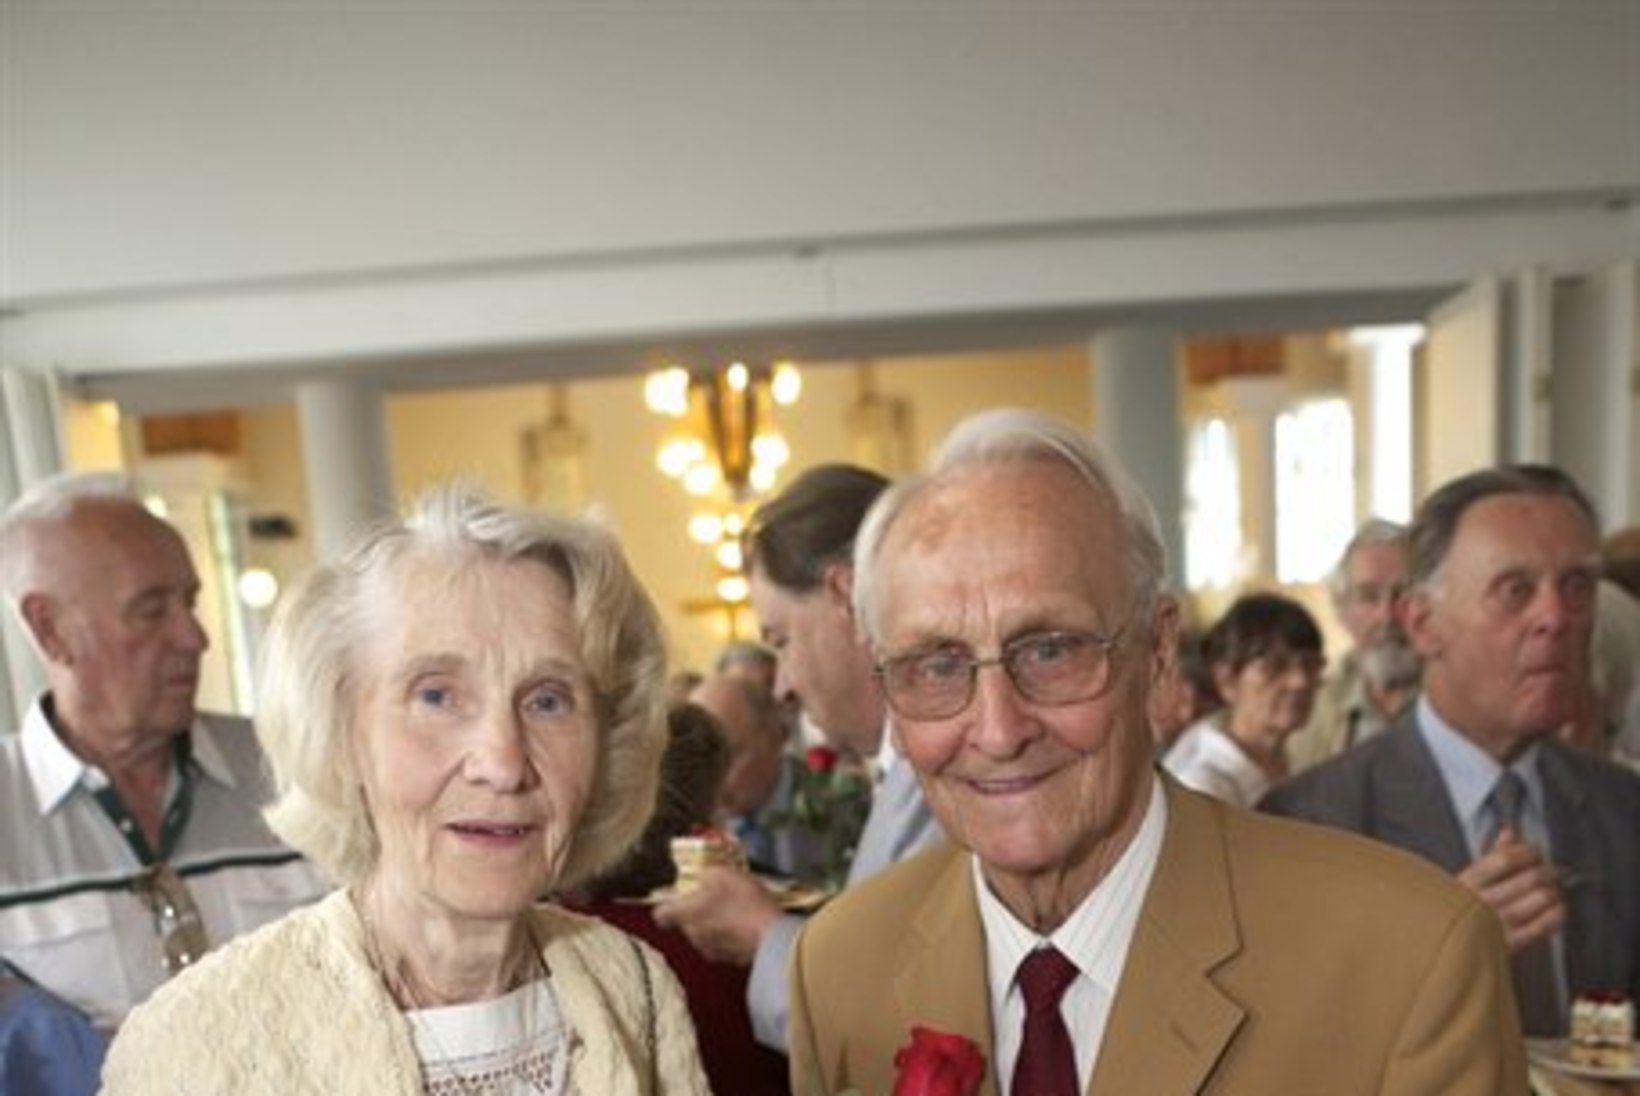 50 aastat abielus: "Probleemide lahendamine nõuab tarkust ja tasakaalukust."